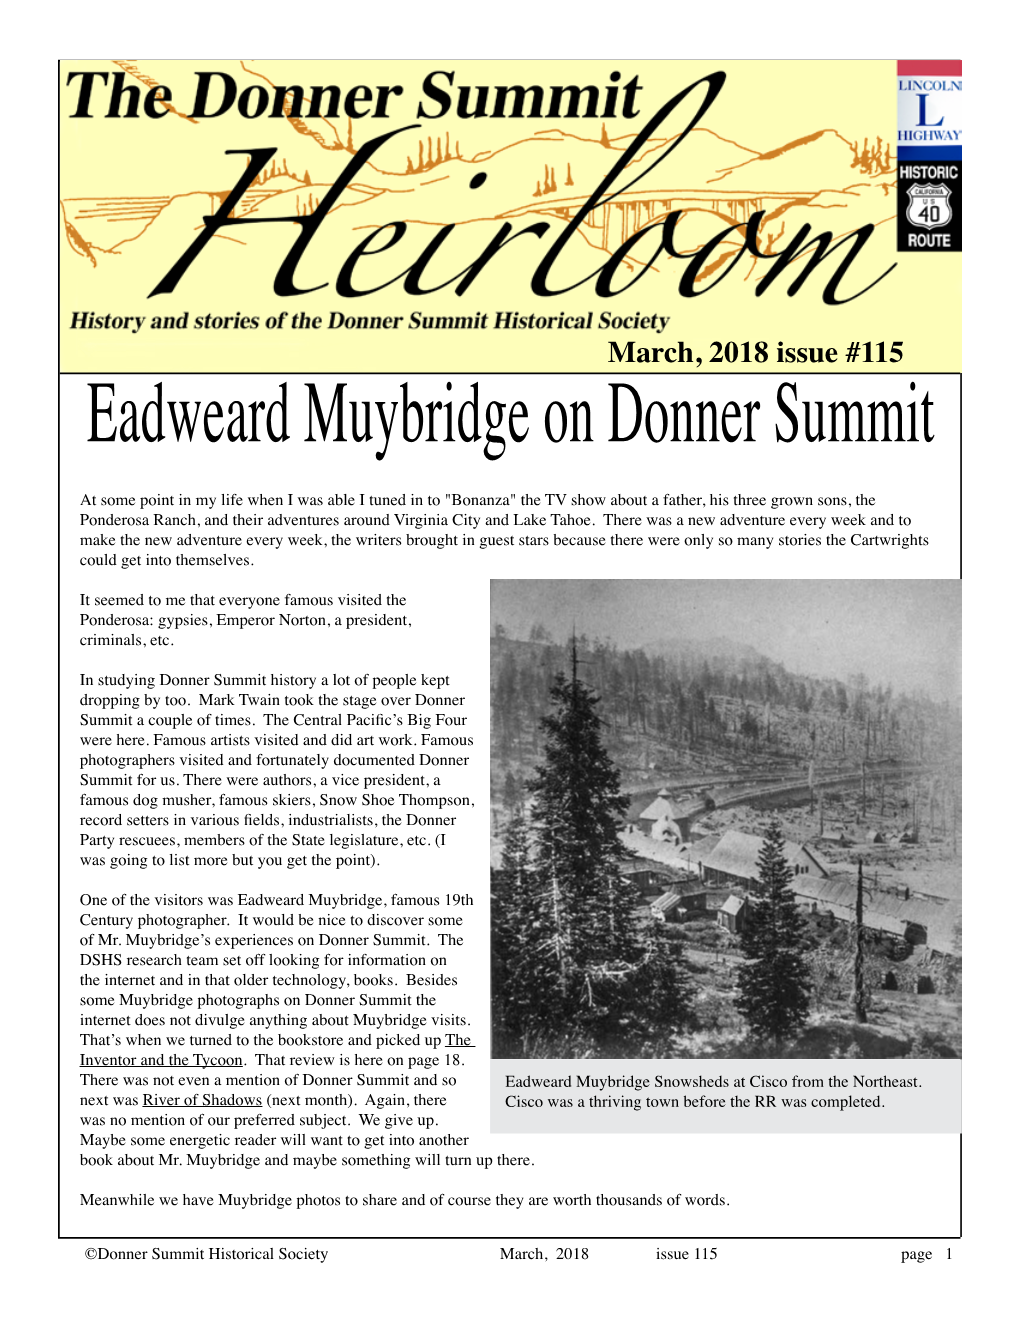 Eadweard Muybridge on Donner Summit